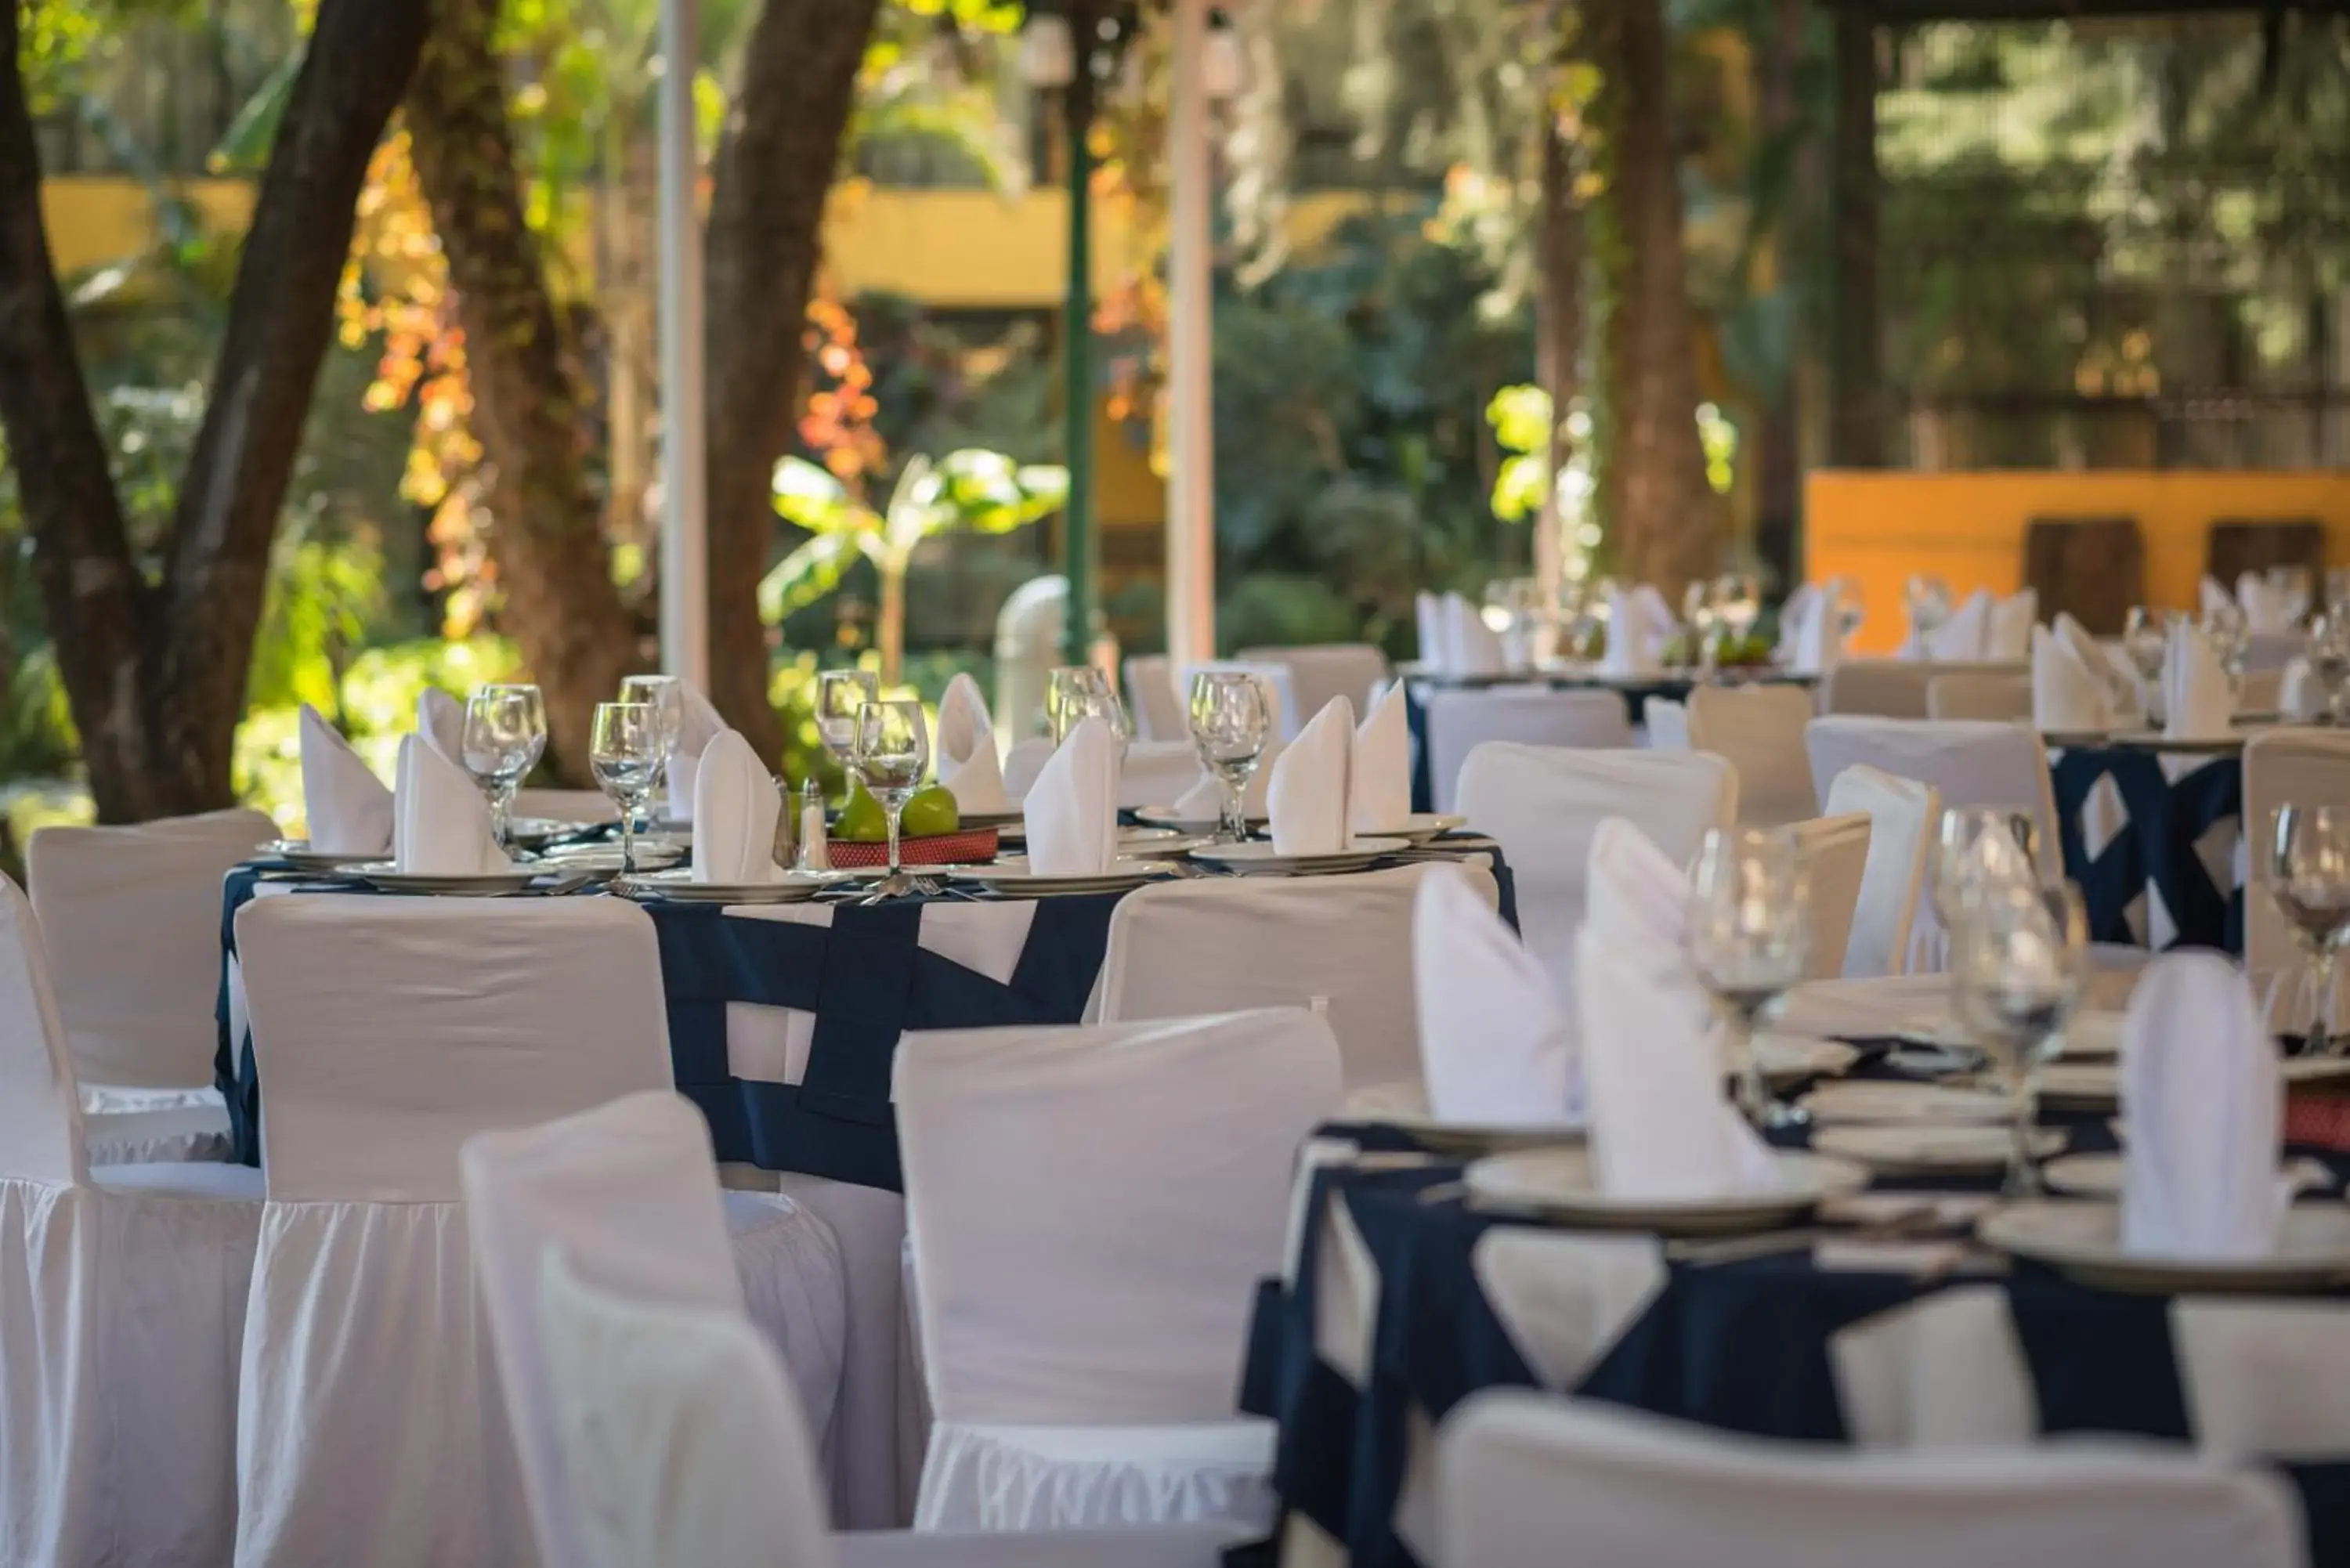 Banquet/Function facilities, Restaurant/Places to Eat in Wyndham Garden Guadalajara Expo Plaza del Sol